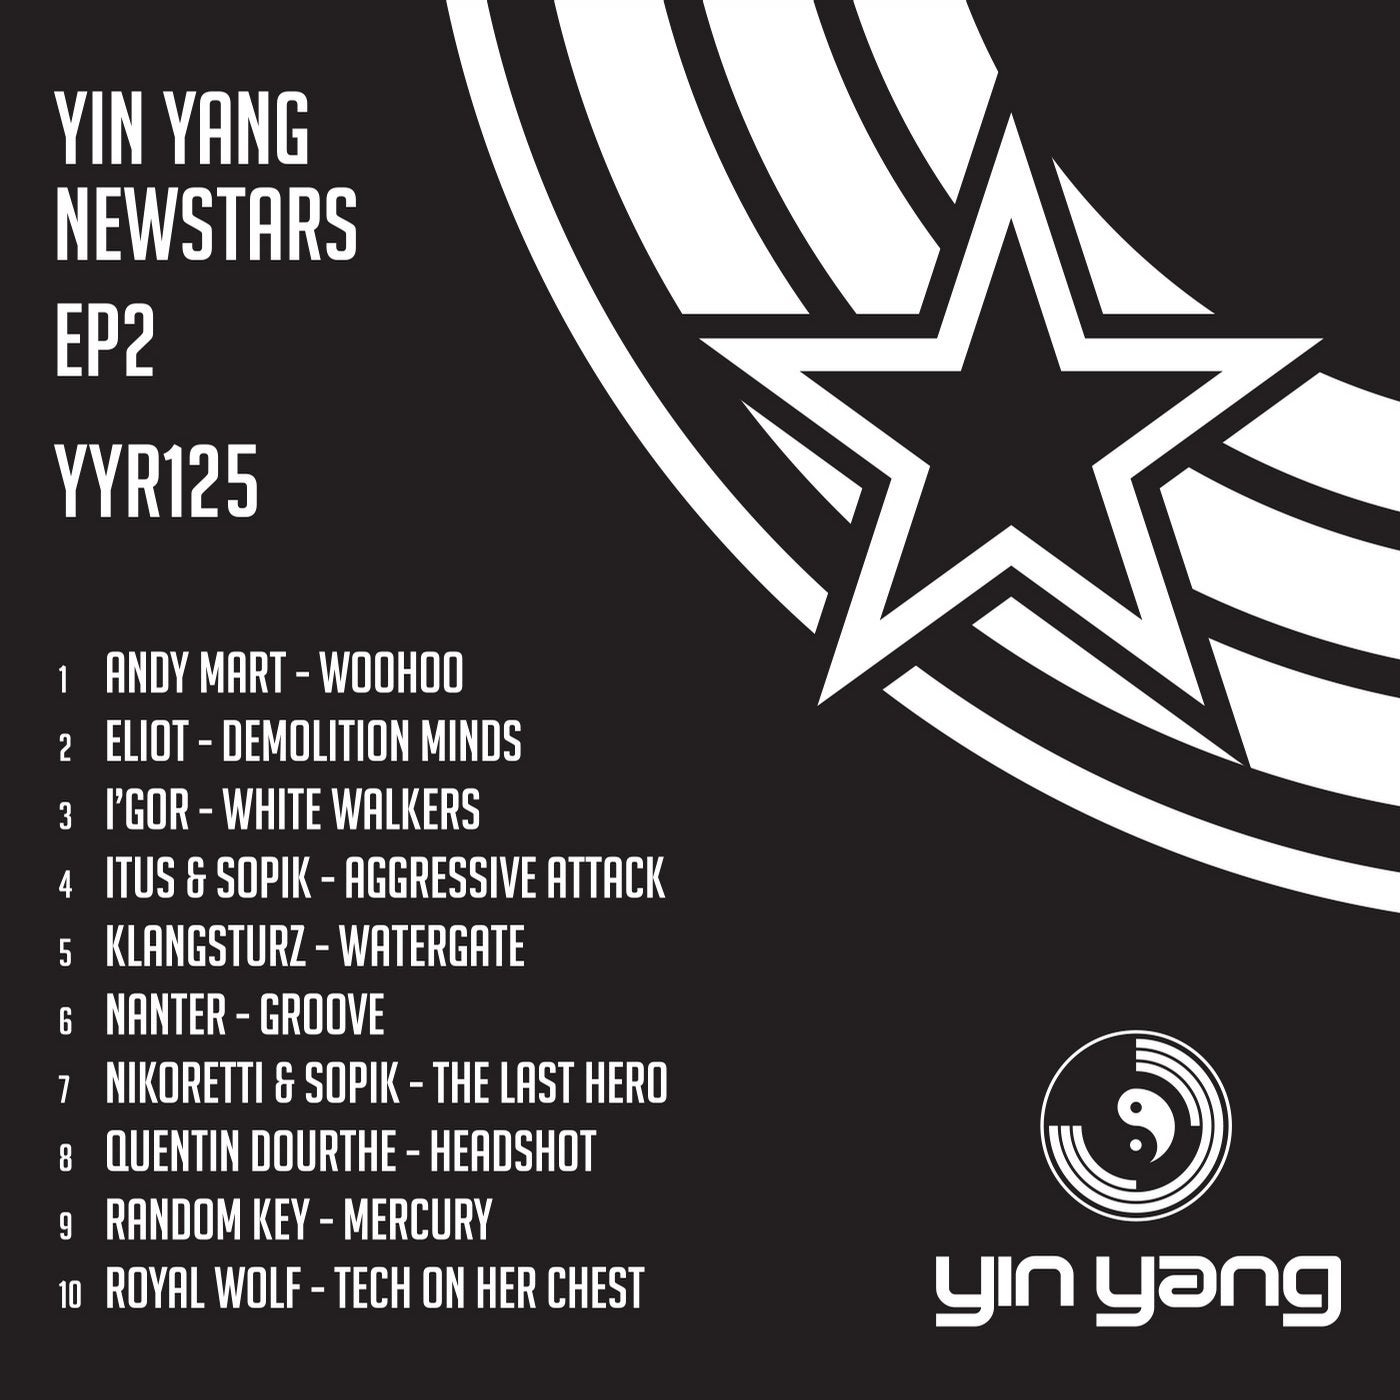 Yin Yang Newstars EP 2